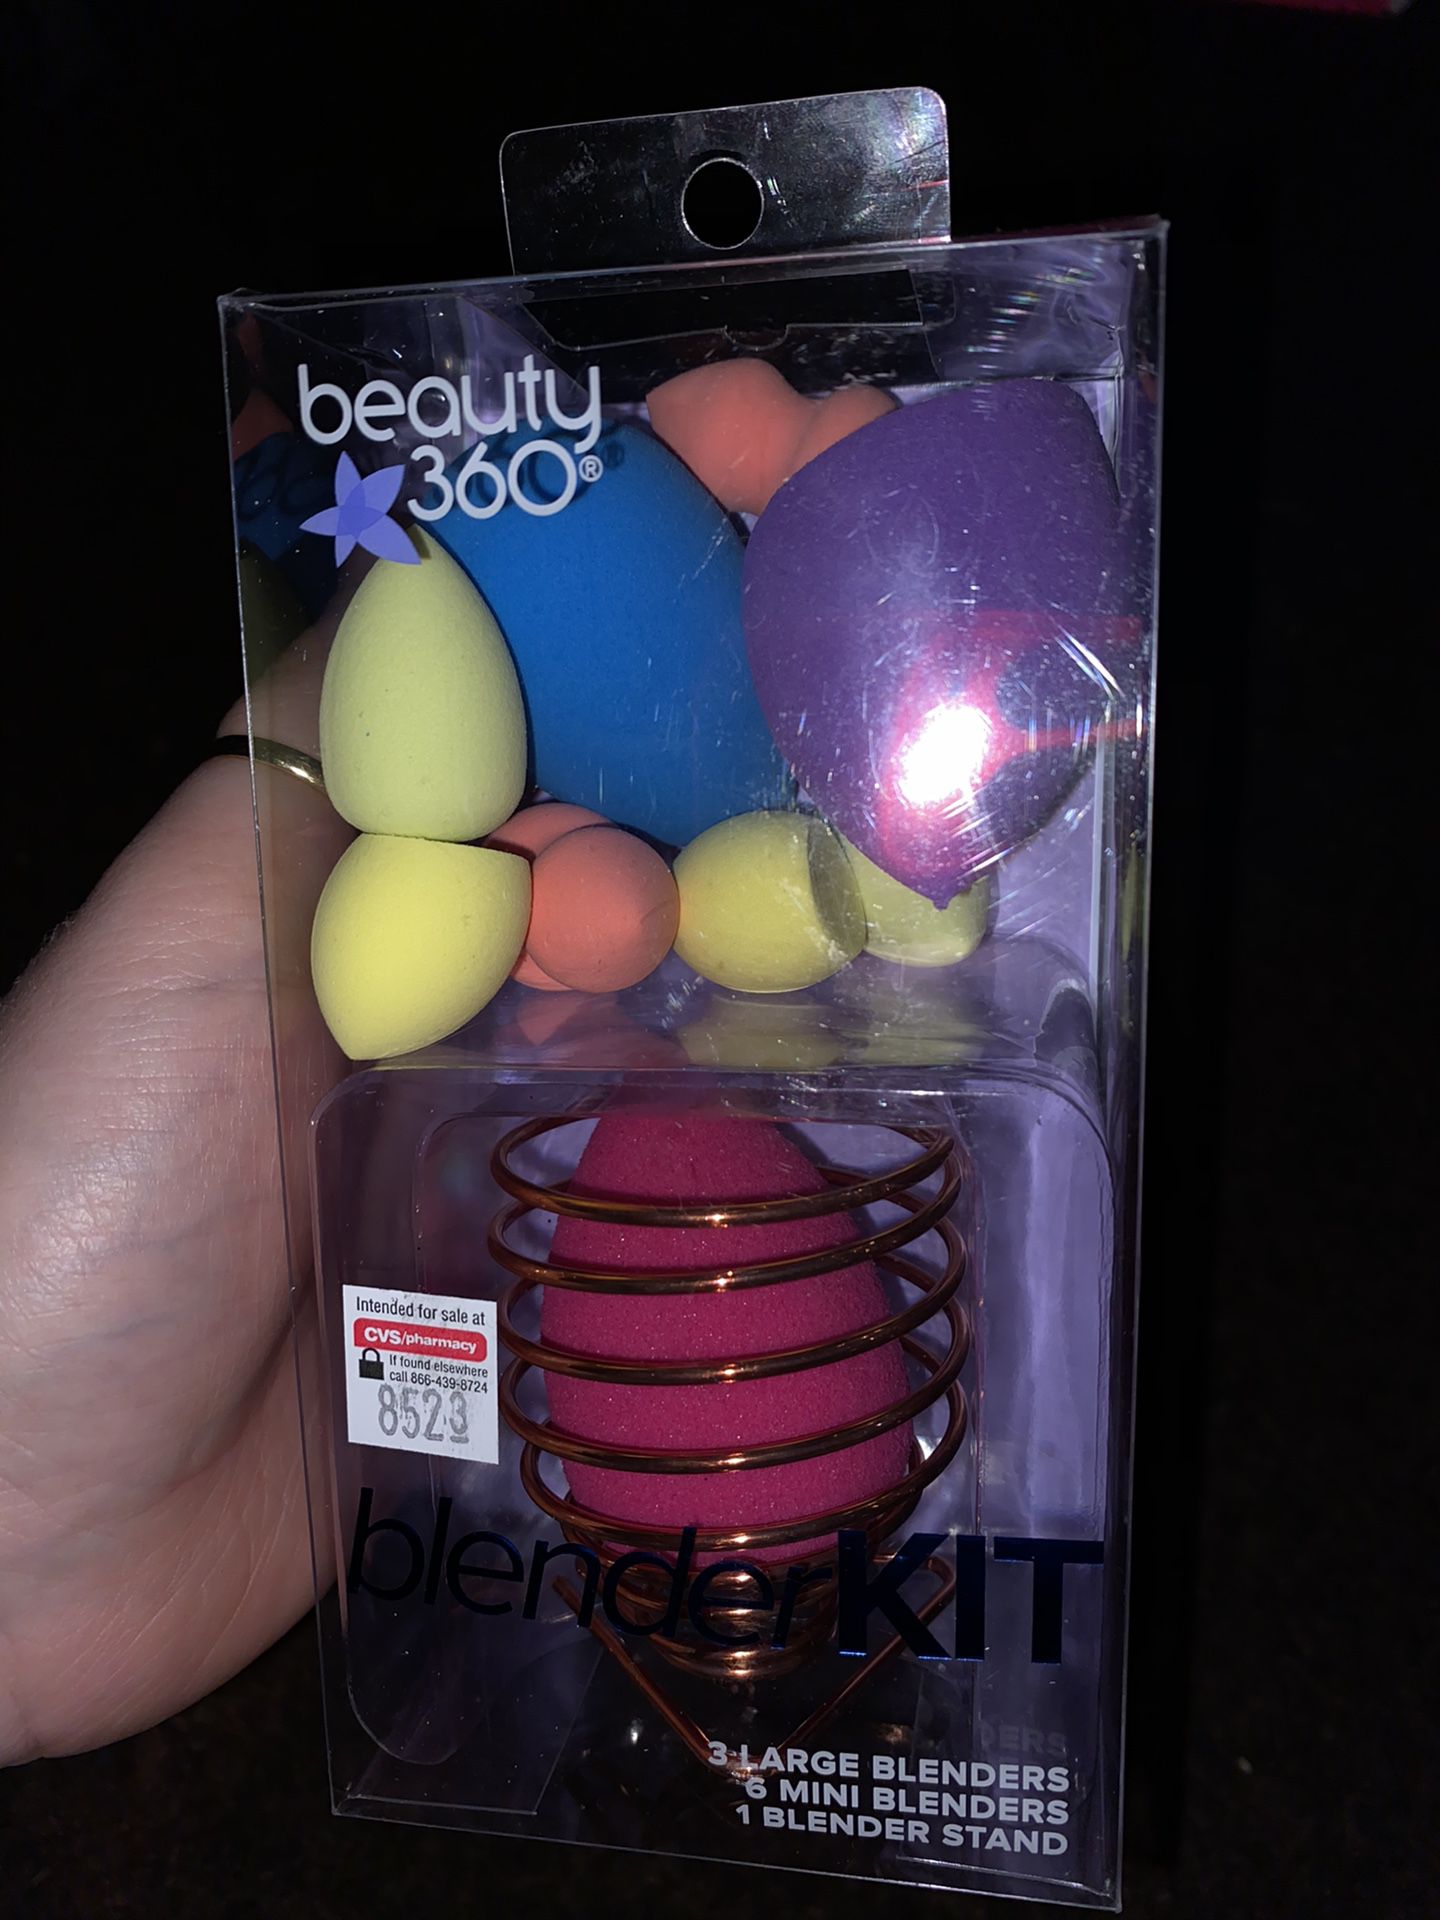 Beauty 360 blender kit